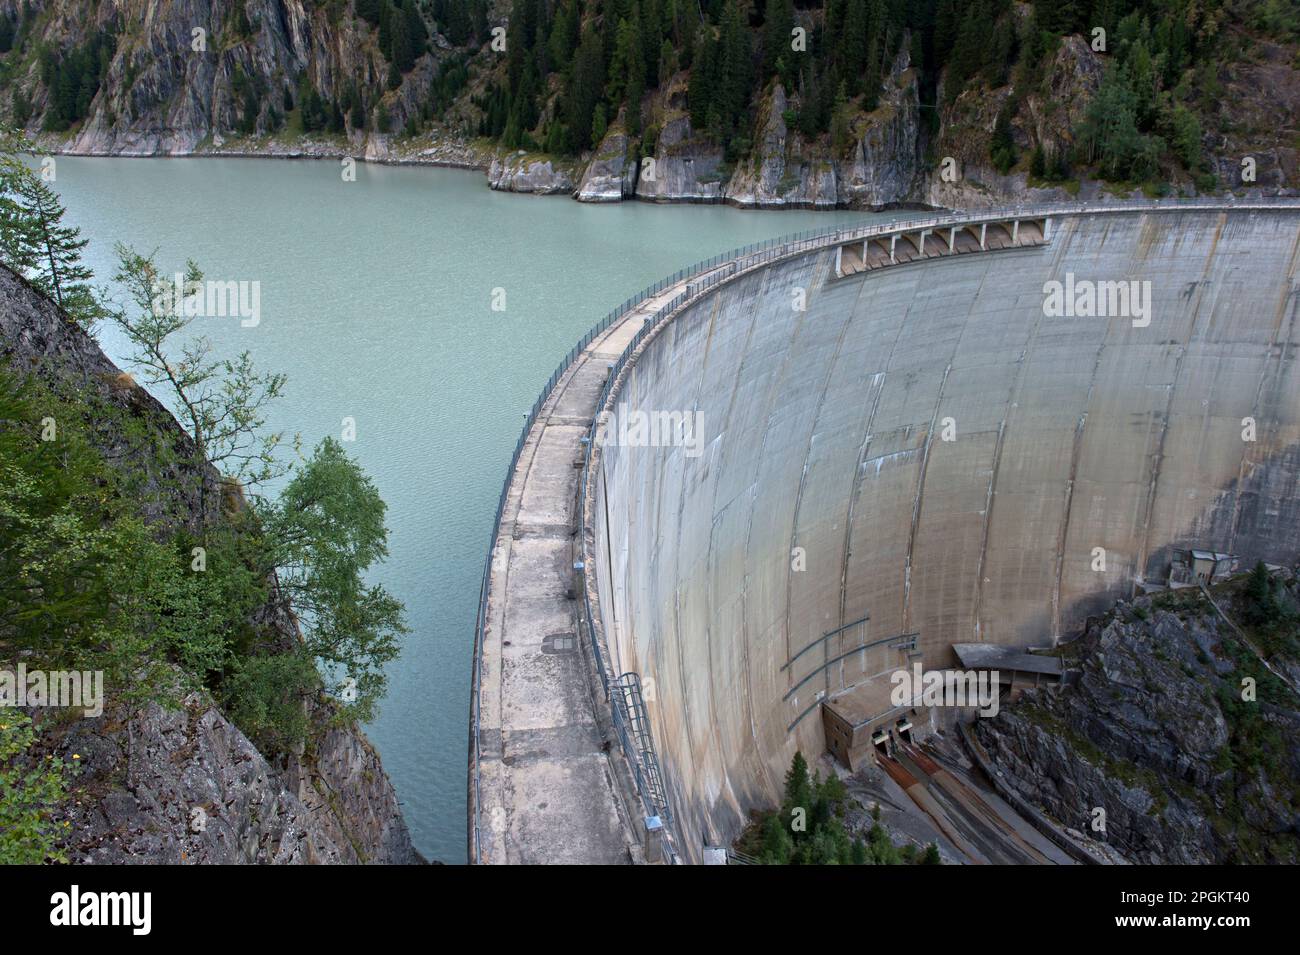 Barrage voûte du barrage de Gibidum, Blatten près de Naters, Valais, Suisse Banque D'Images